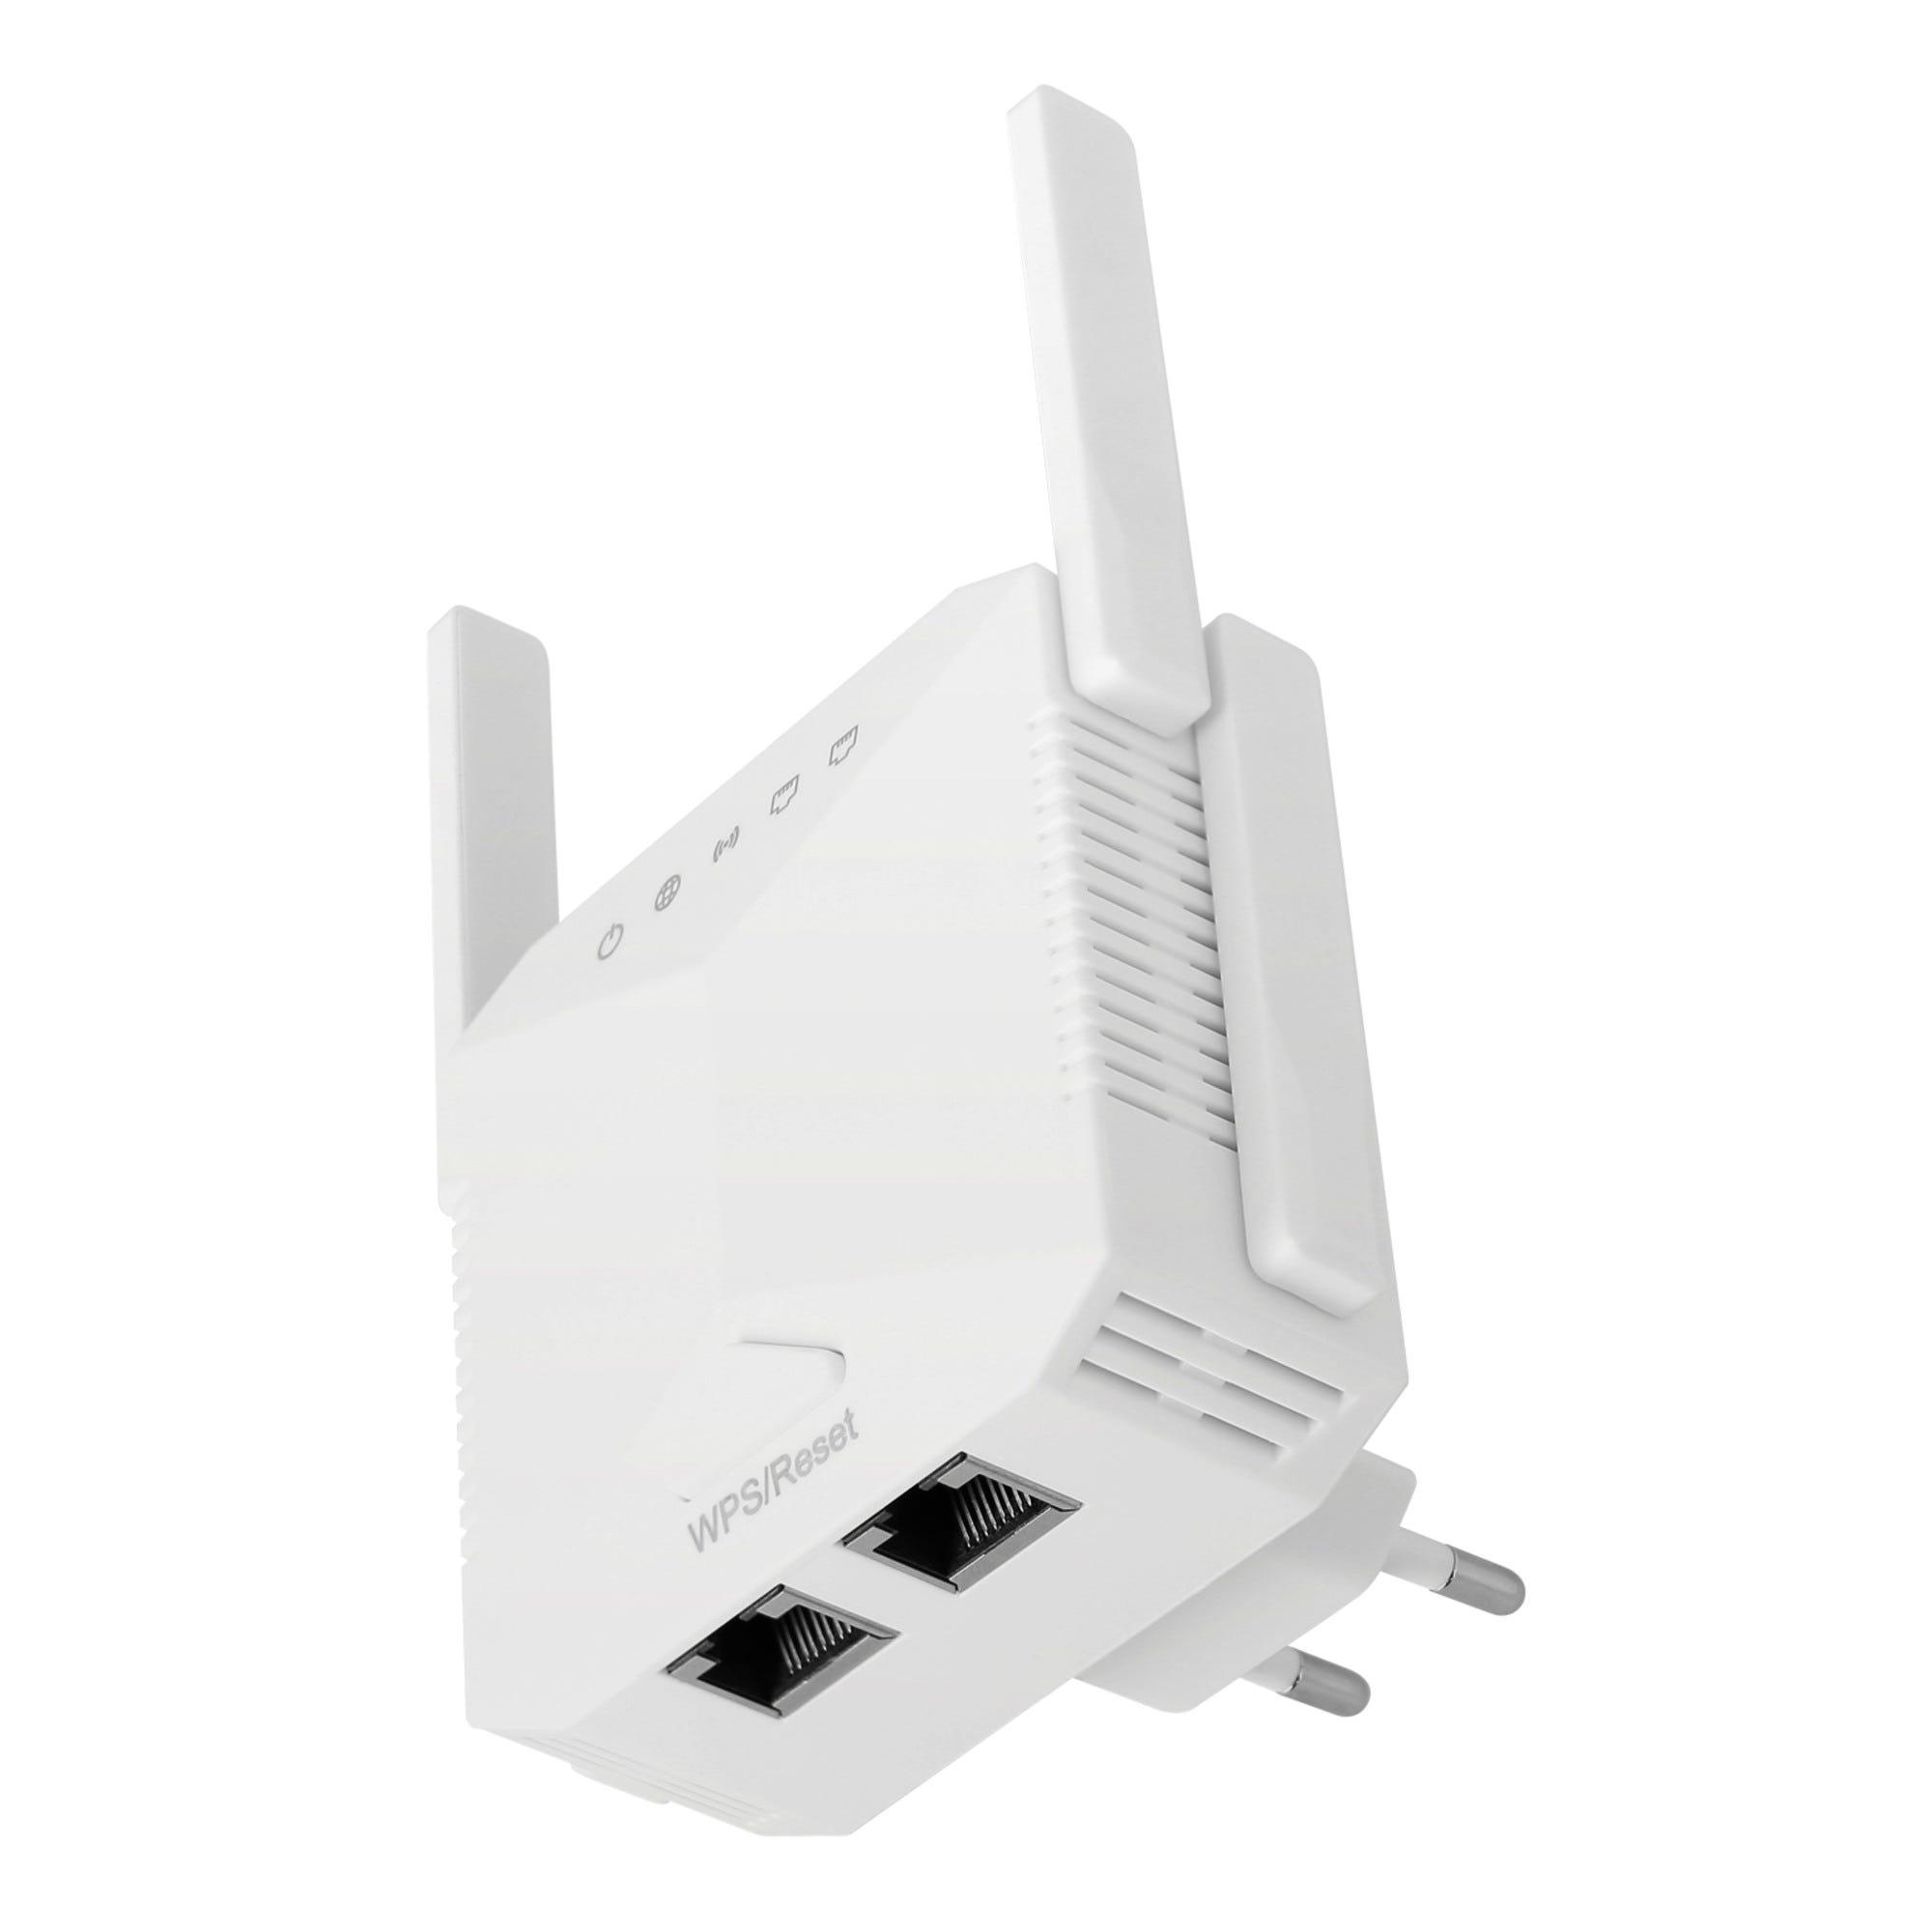 Répéteur/Routeur Wi-Fi 300Mbps 4 antennes toute Box Internet - SEDEA _531430 2